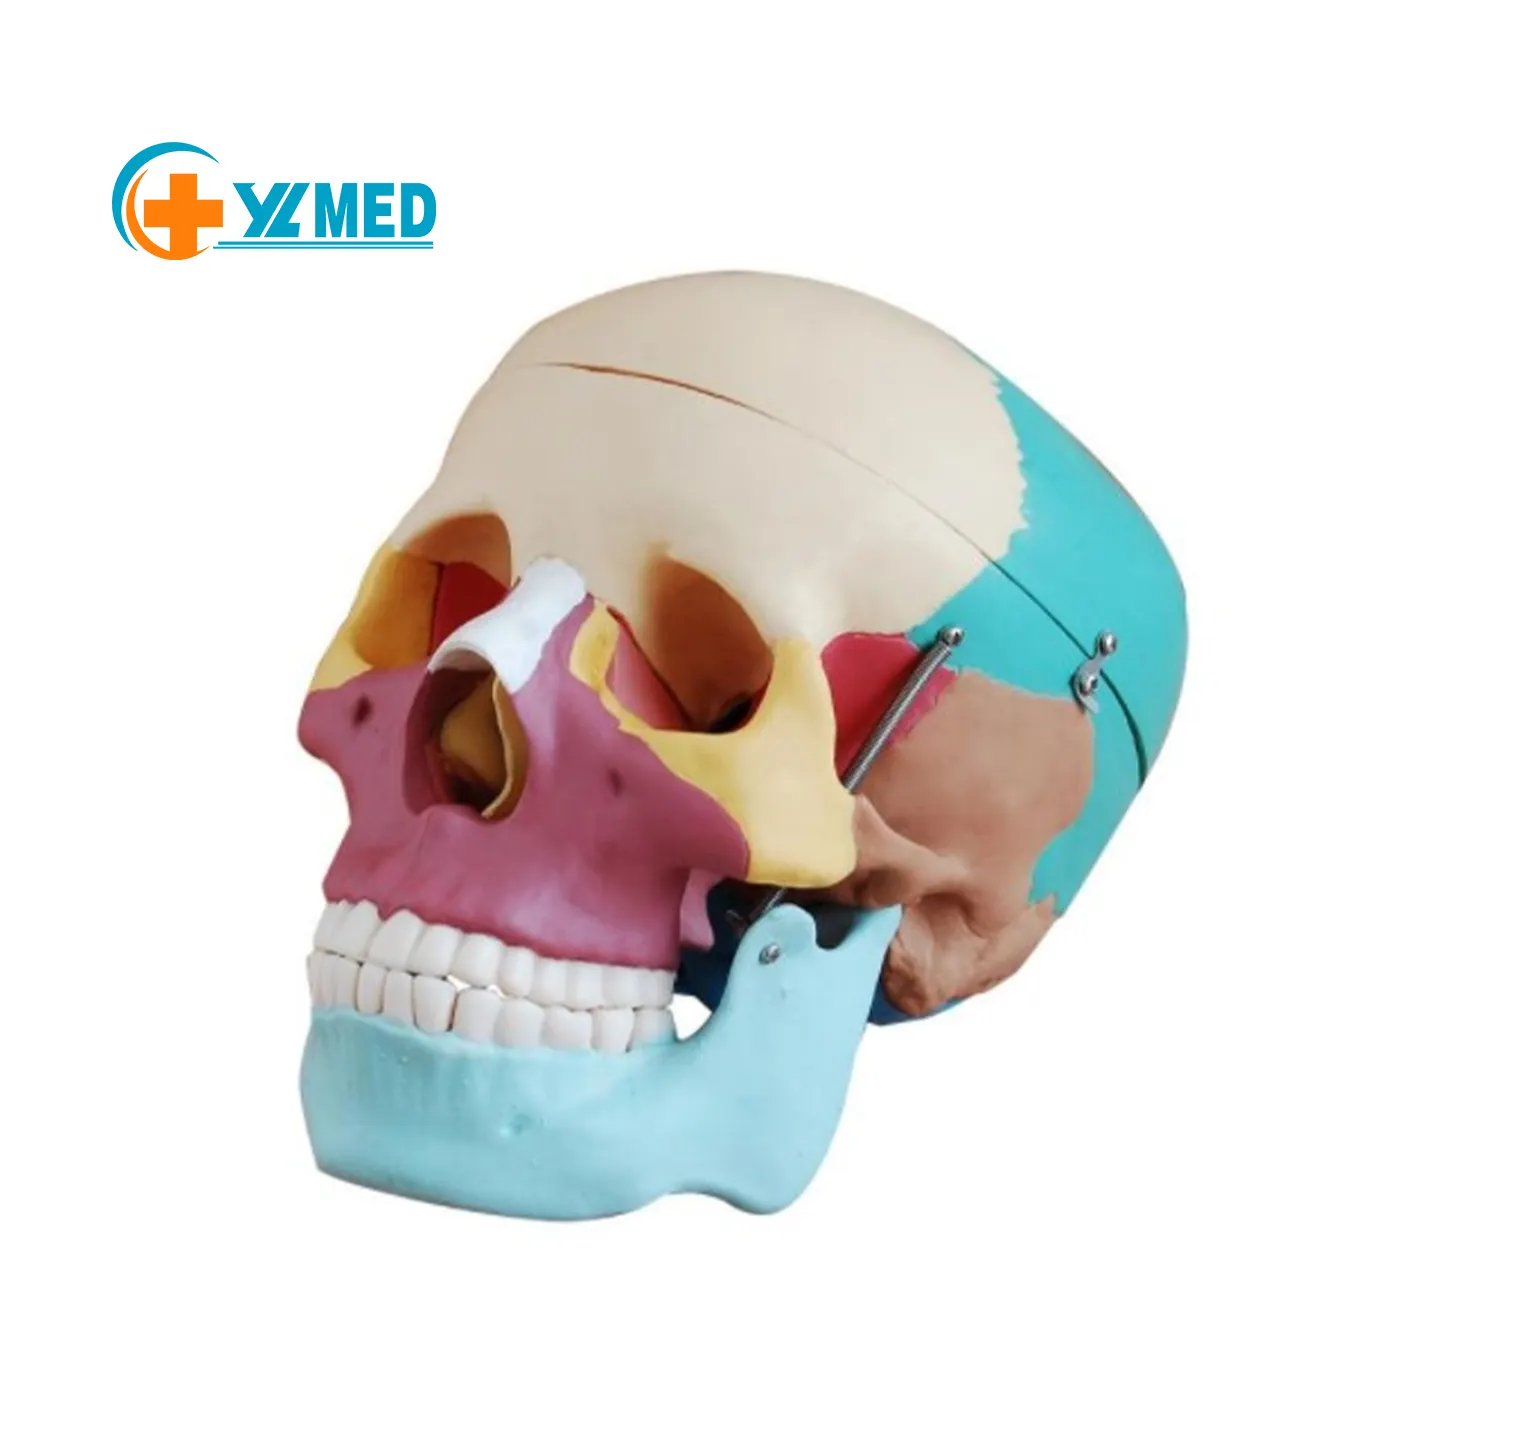 Cranio di scheletro modello a grandezza naturale modello del cranio con i muscoli 14 parte i muscoli del cranio della colonna vertebrale cervicale e hyoid osso